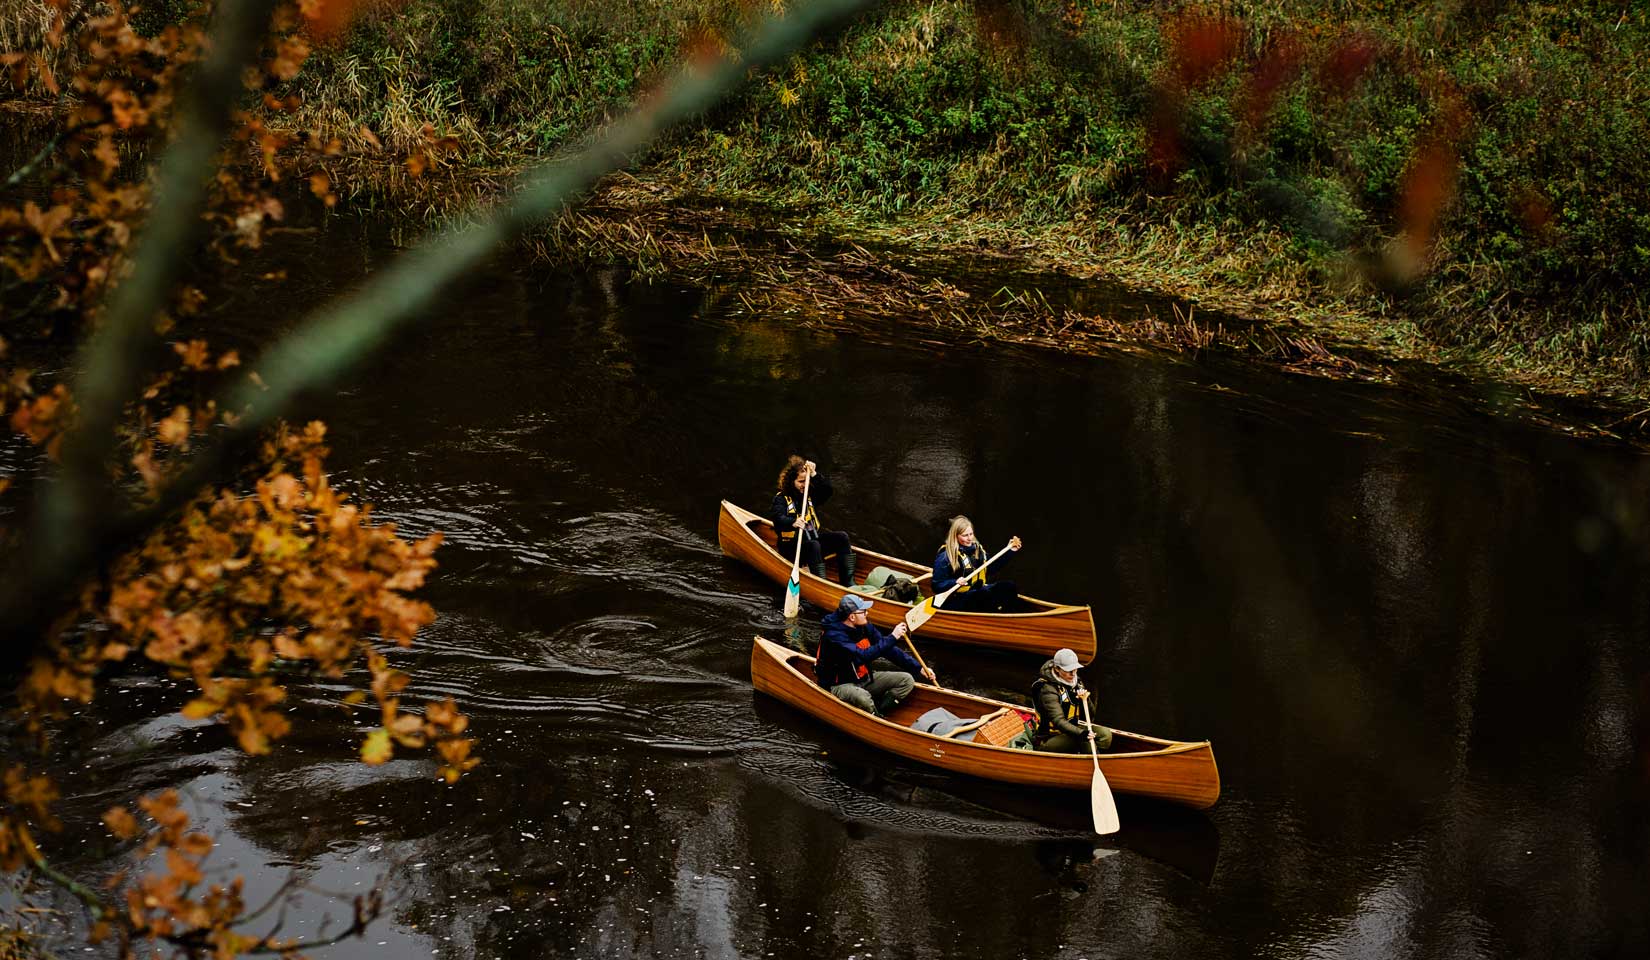 Medinės kedro kanojos leidžiasi upe